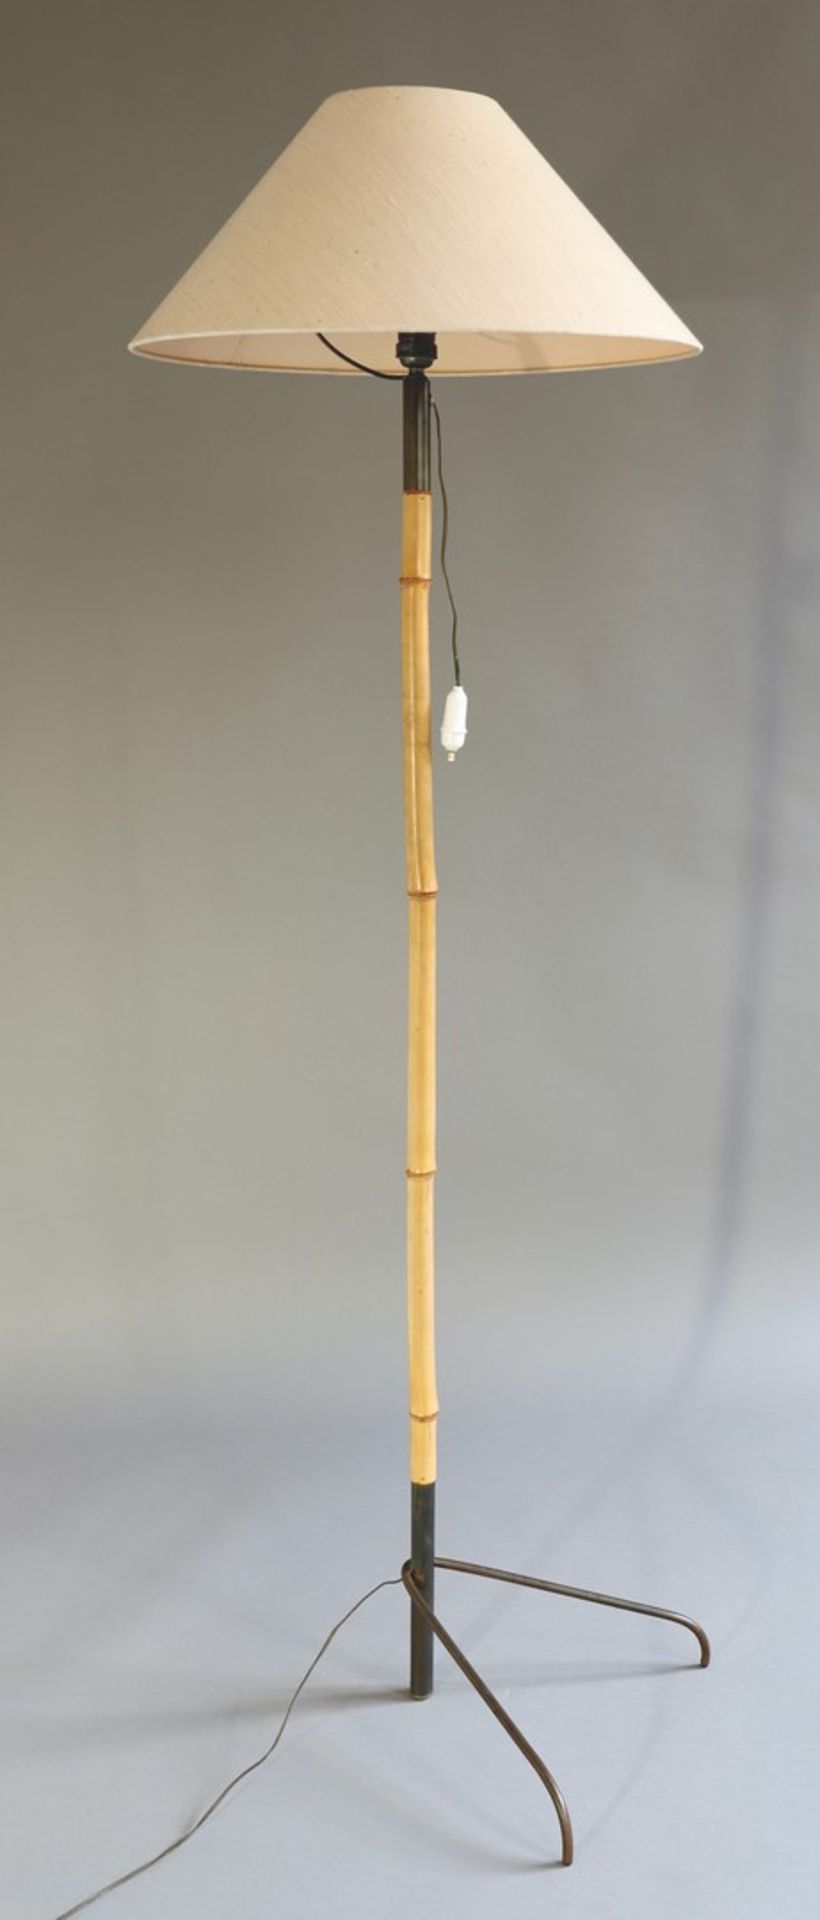 Bambus StehleuchteDesign 1950sBambus Stehleuchte. Entwurf 1950er Jahre. Bambusstab, Messing, - Bild 2 aus 2